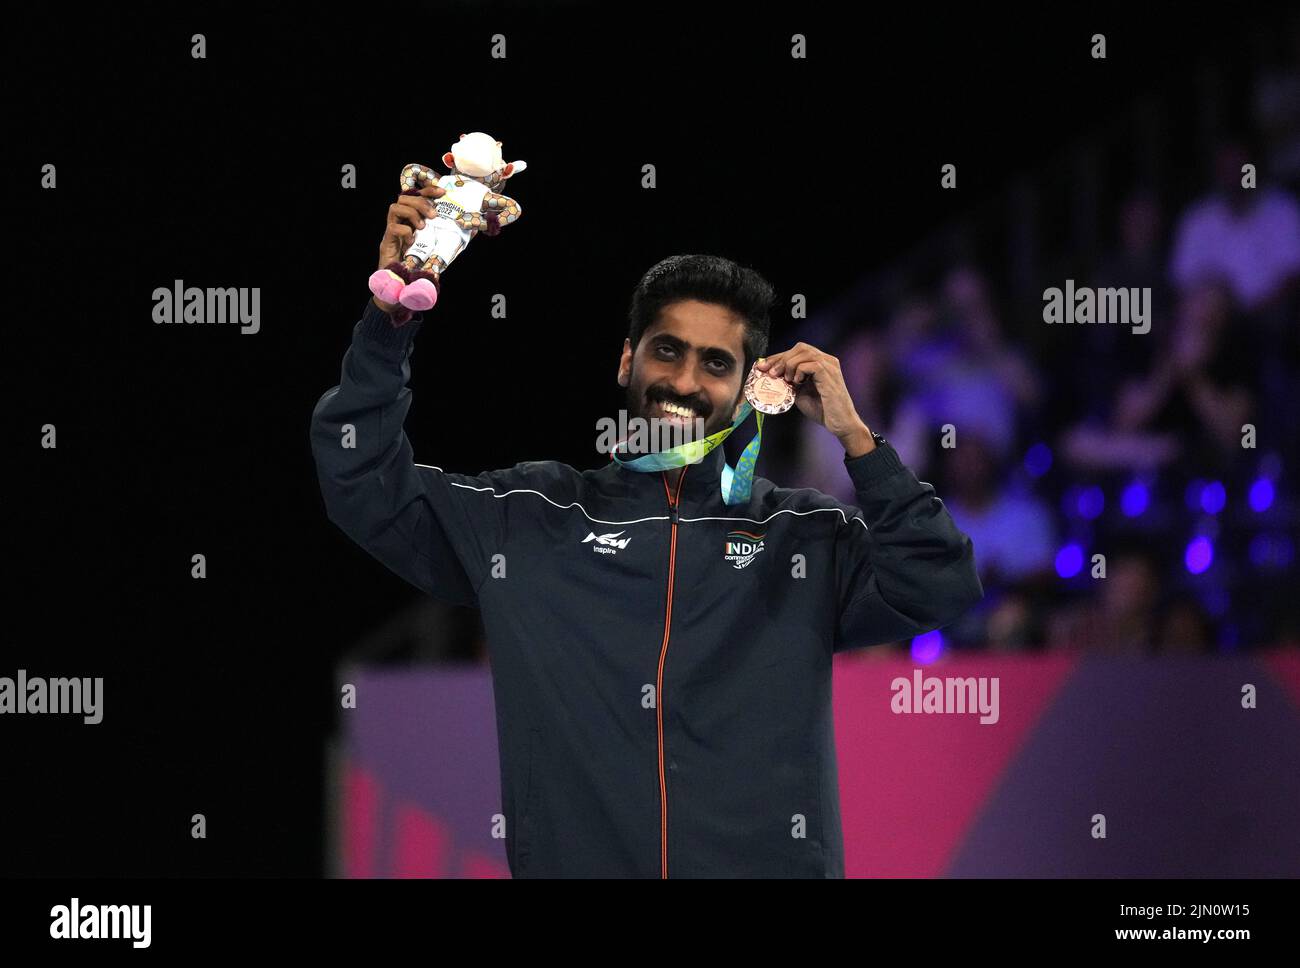 Sathiyan Gnanasekaran de la India después de ganar bronce en el tenis de mesa Men's Singles en el NEC el día once de los Juegos de la Commonwealth de 2022 en Birmingham. Fecha de la foto: Lunes 8 de agosto de 2022. Foto de stock